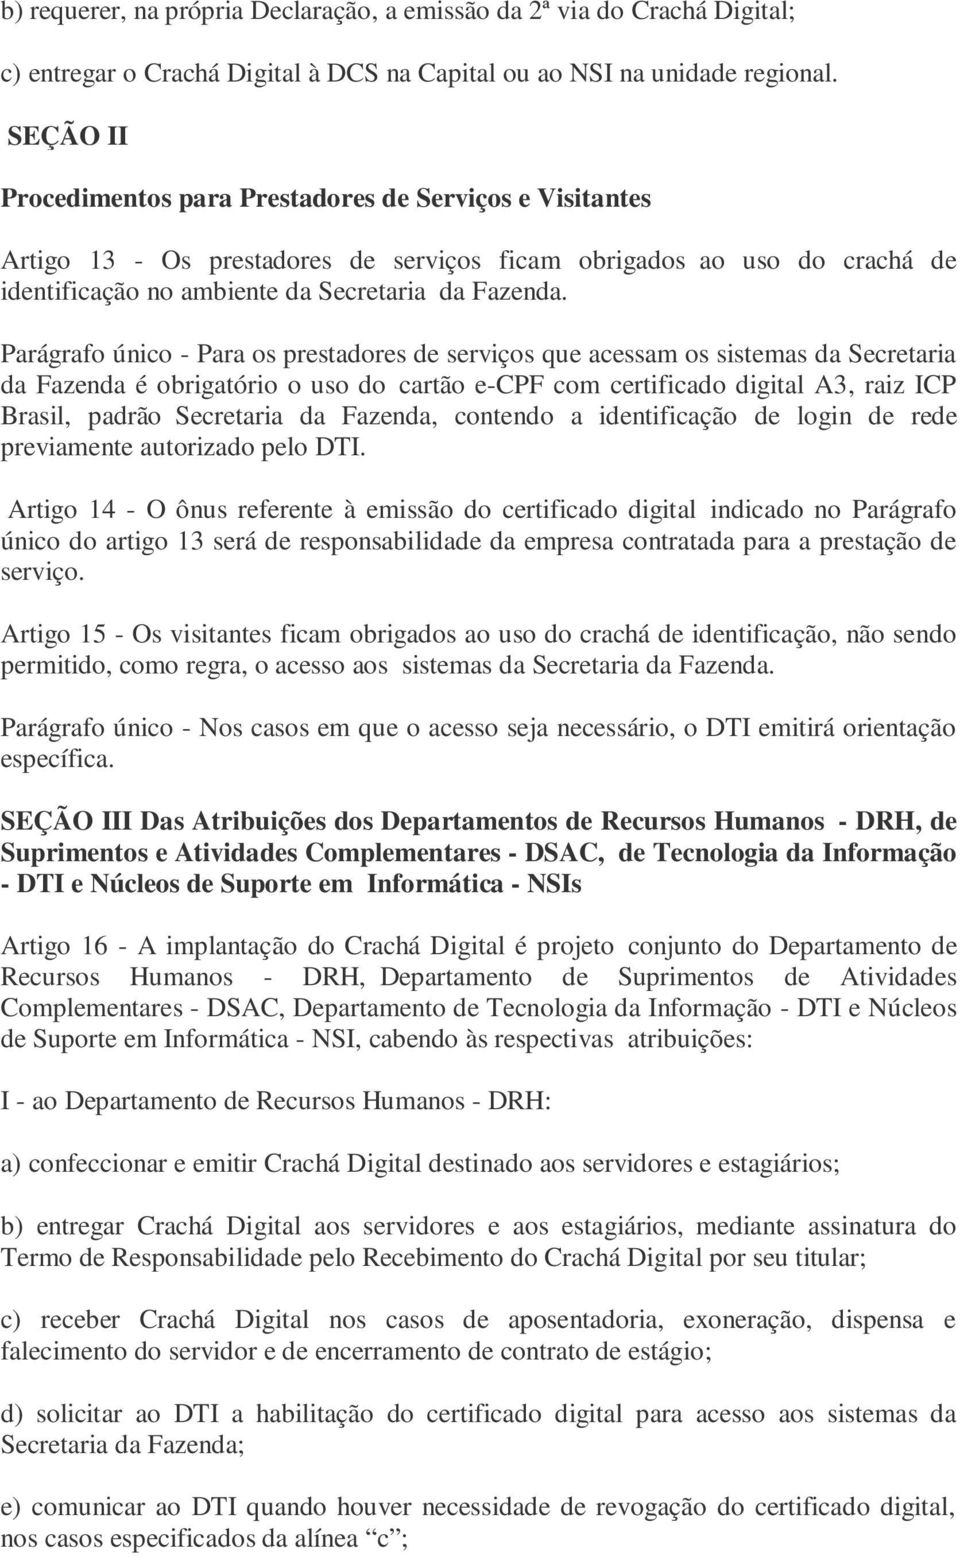 Parágrafo único - Para os prestadores de serviços que acessam os sistemas da Secretaria da Fazenda é obrigatório o uso do cartão e-cpf com certificado digital A3, raiz ICP Brasil, padrão Secretaria